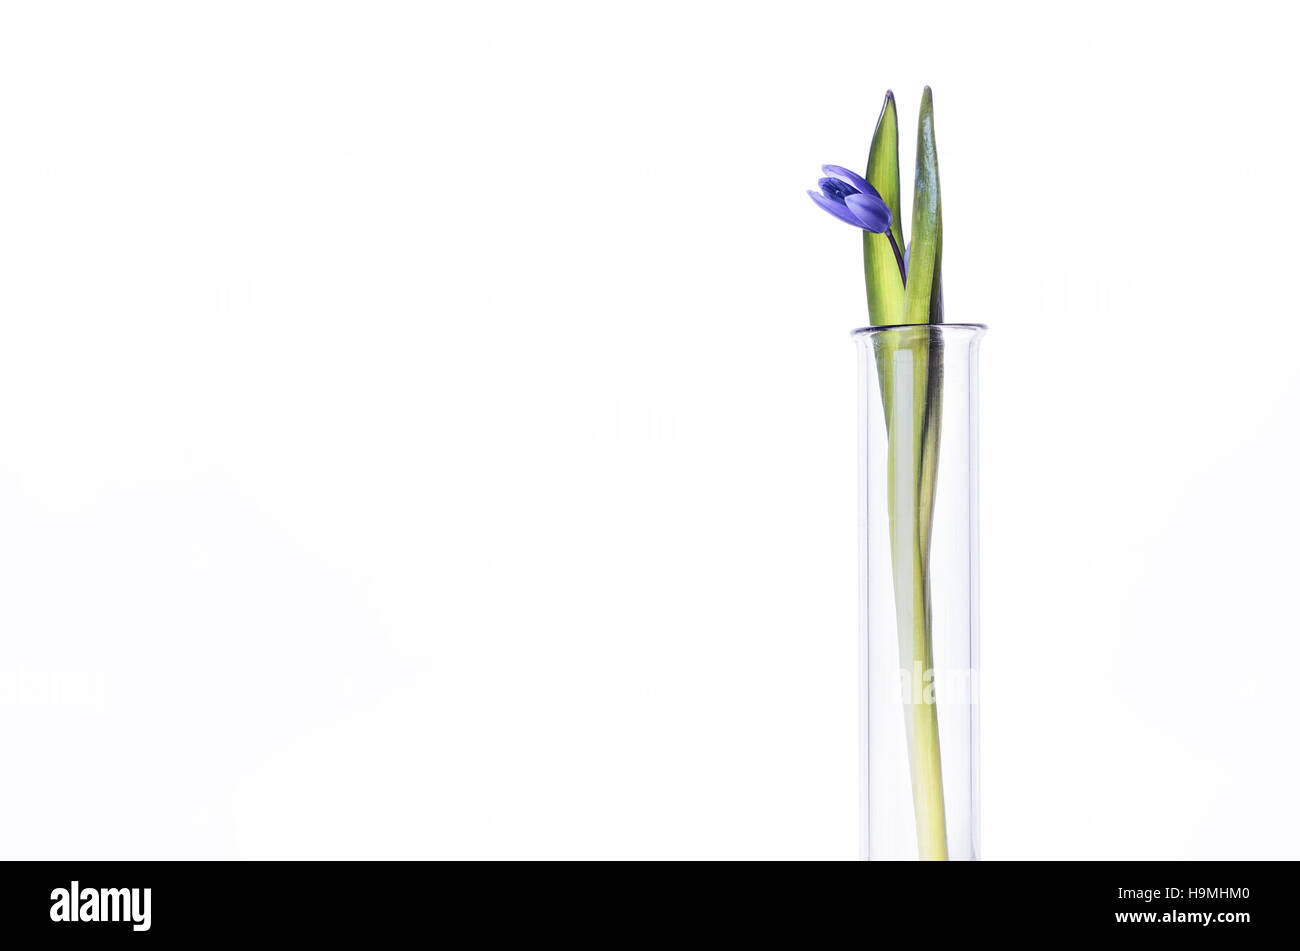 La fleur (jacinthes) dans un tube à essai isolé sur fond blanc. Expérience scientifique. Snowdrop bleu fleurs dans un vase de verre. Still Life printemps Banque D'Images